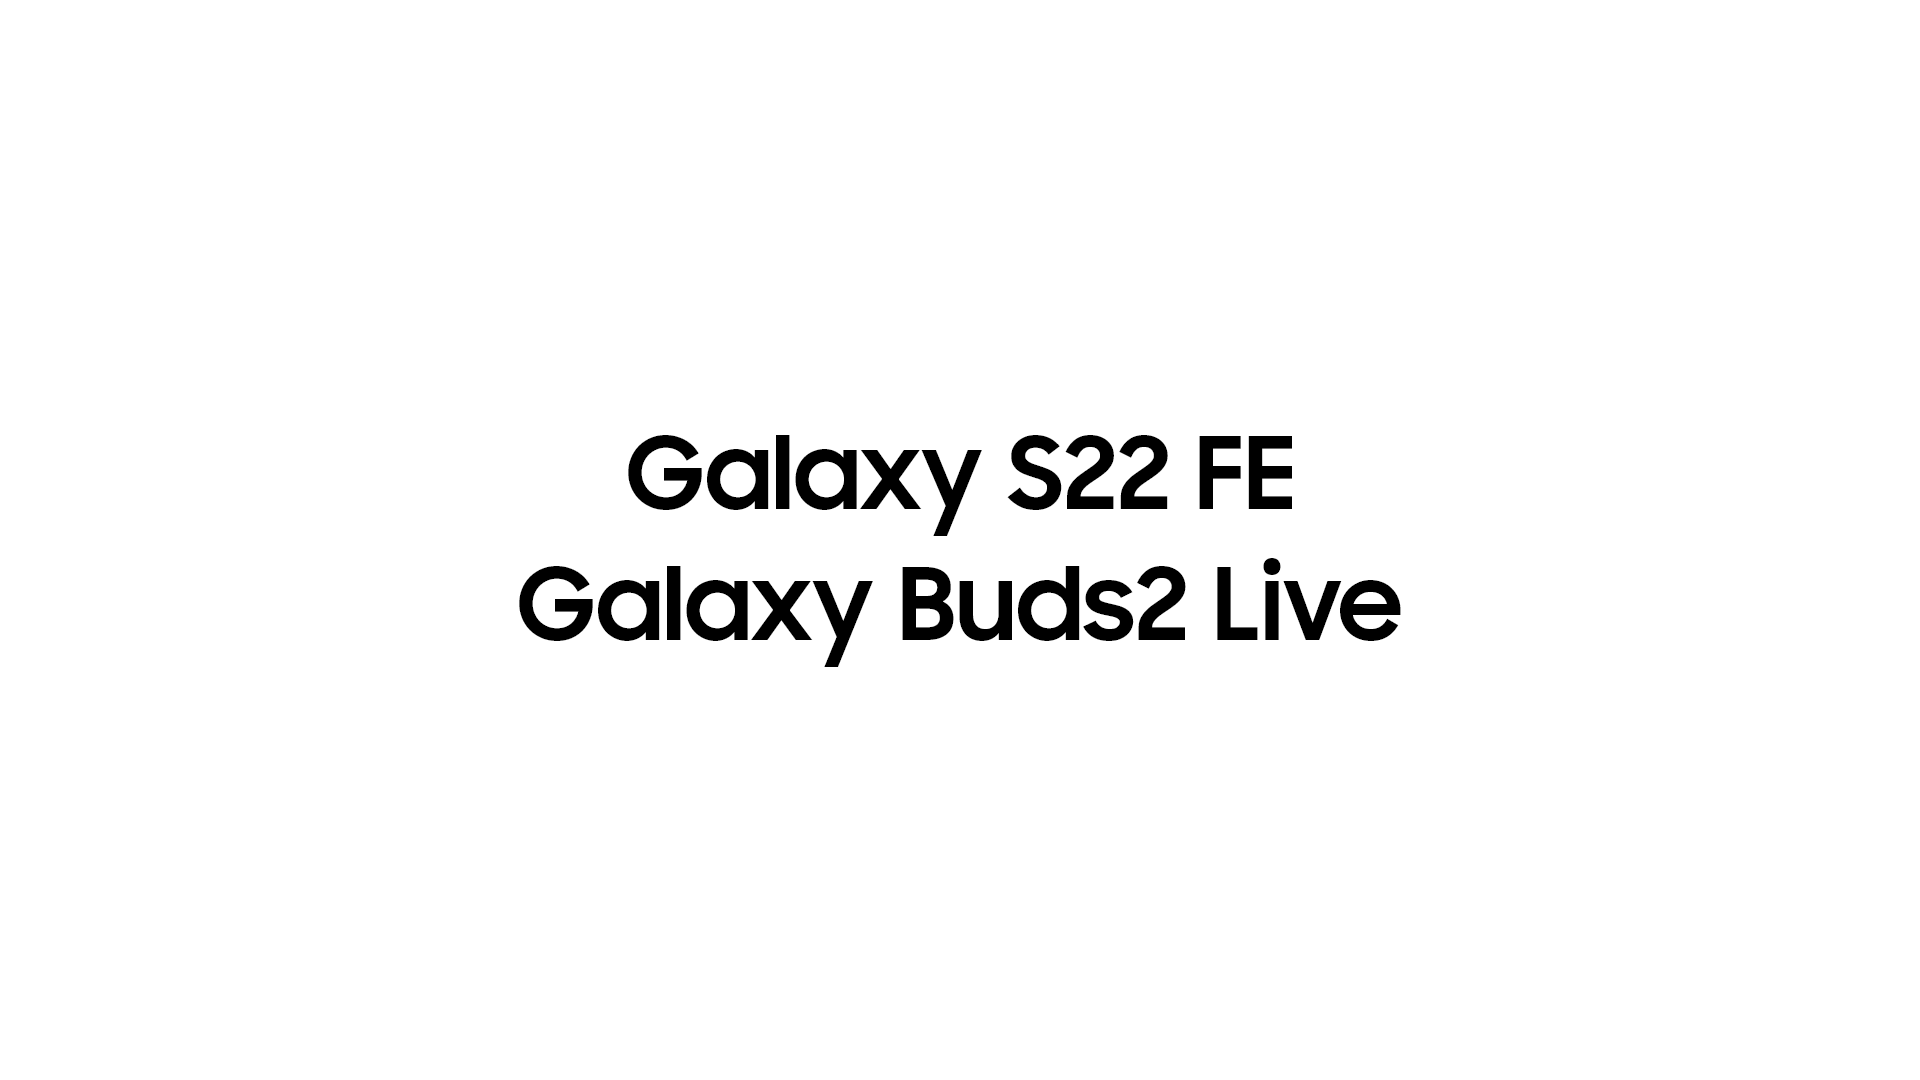 Die neuen Galaxy Buds Live werden voraussichtlich beim Launch-Event in diesem Frühjahr zum angeblichen Galaxy S22 FE stoßen.  Das bestgehütete Geheimnis von Samsung!  Ein erstklassiges Telefon, das billiger als das Galaxy S23 ist, um bald die Show zu stehlen?